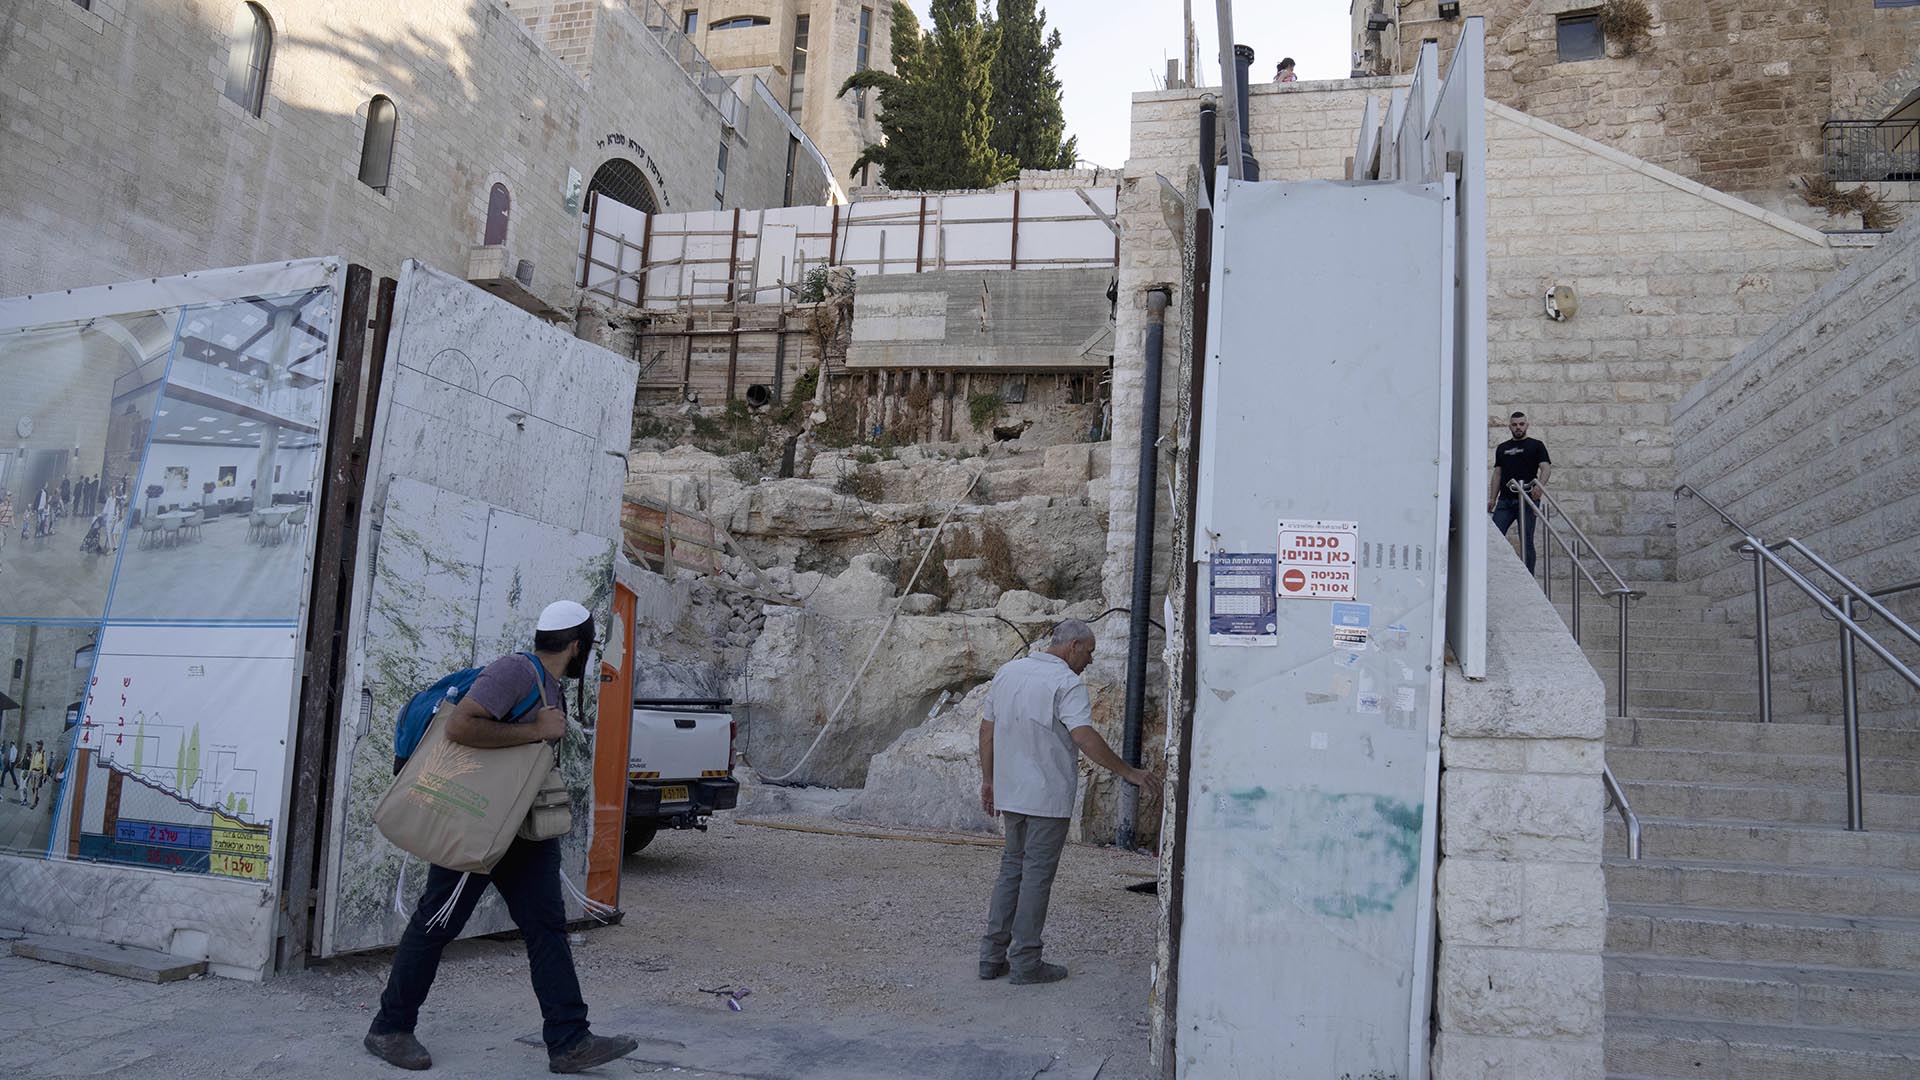 El arqueólogo de la Universidad Hebrea, Dr. Oren Gutfeld, centro, abre una puerta al sitio de un baño ritual judío o mikve, descubierto cerca del Muro de los Lamentos en la Ciudad Vieja de Jerusalén. (Foto AP/Maya Alleruzzo)

